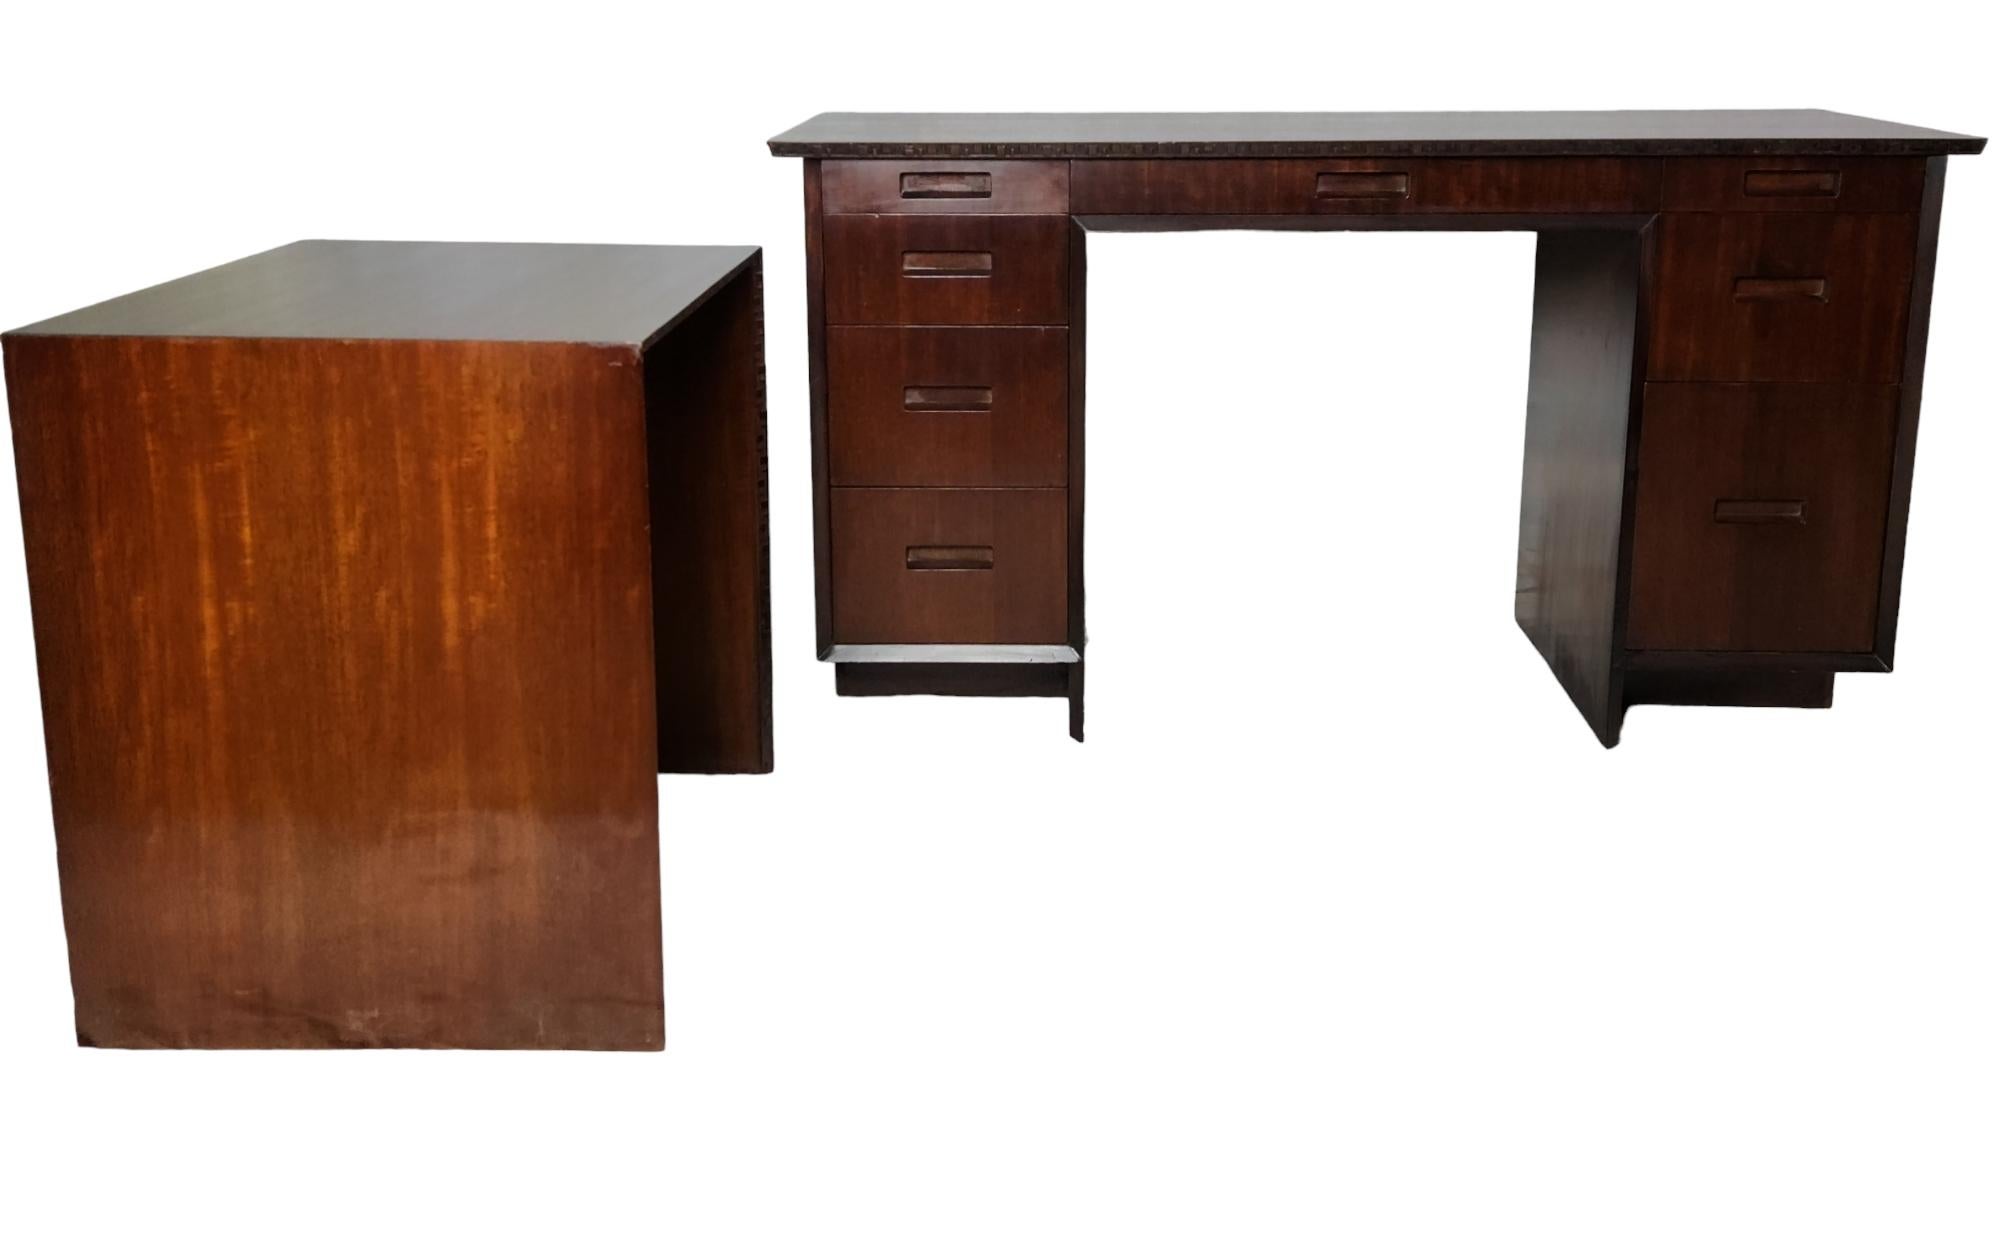 Ein professionell aufgearbeiteter klassischer Schreibtisch mit neun Schubladen aus honduranischem Mahagoni und einem separaten Schreibmaschinentisch, der von Frank Lloyd Wright für seine Möbellinie Taliesin entworfen und 1955 von Heritage-Henredon